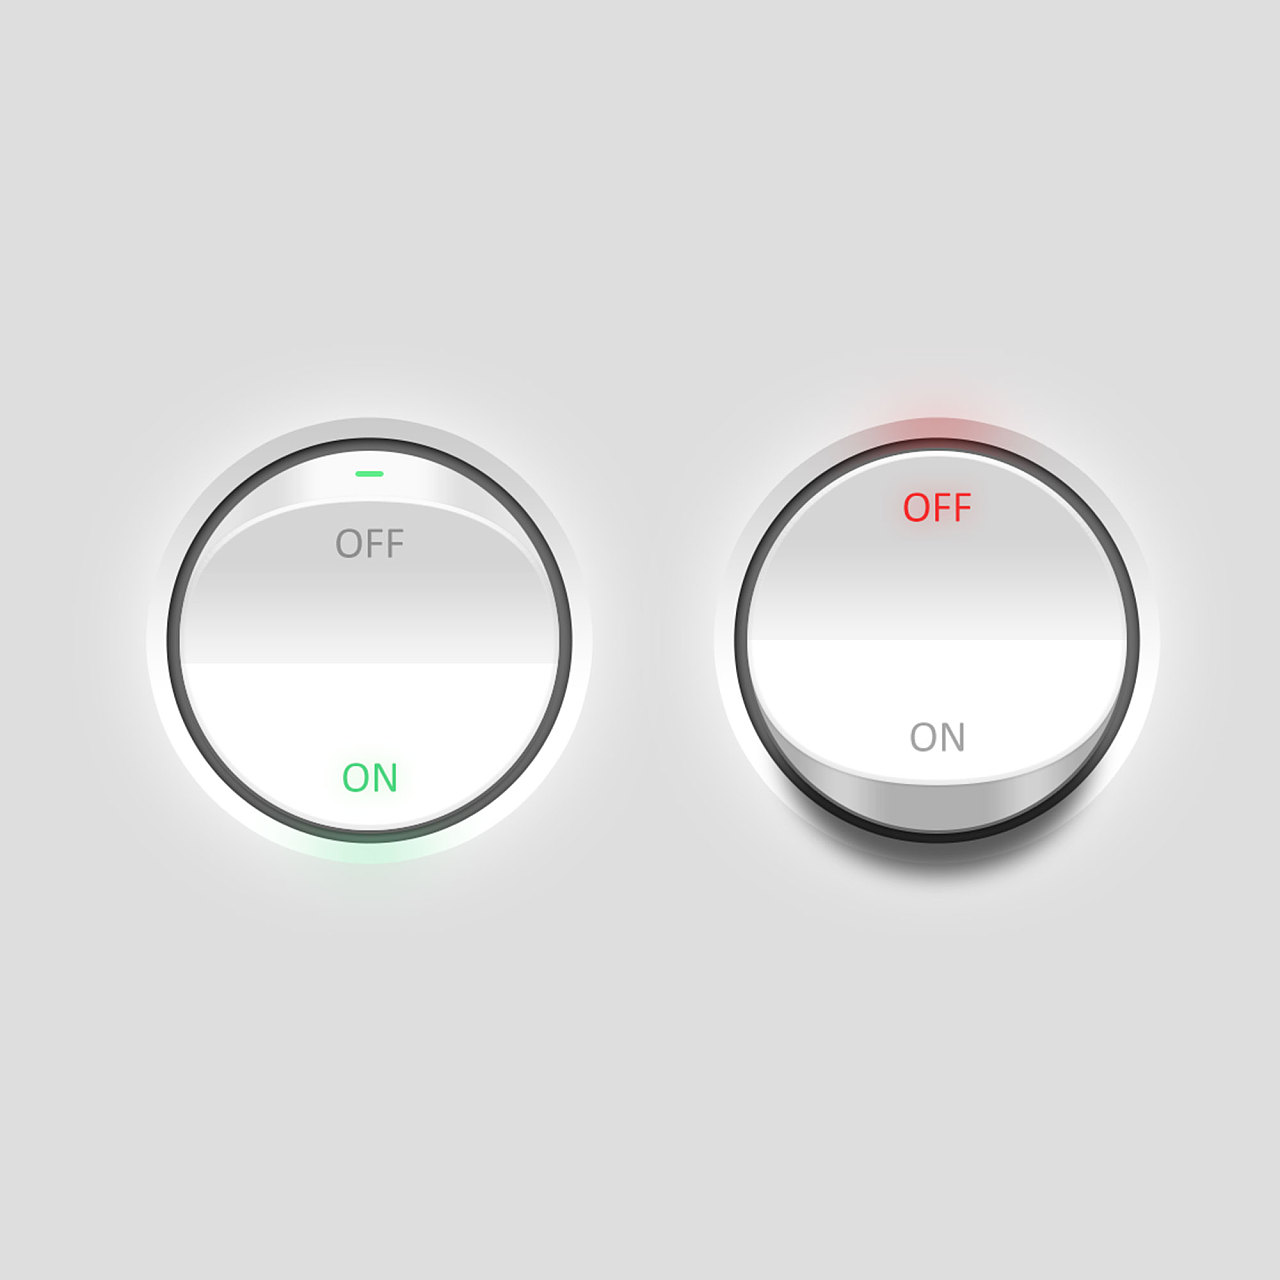 UI界面组件设计系列之——按钮设计 - 25学堂